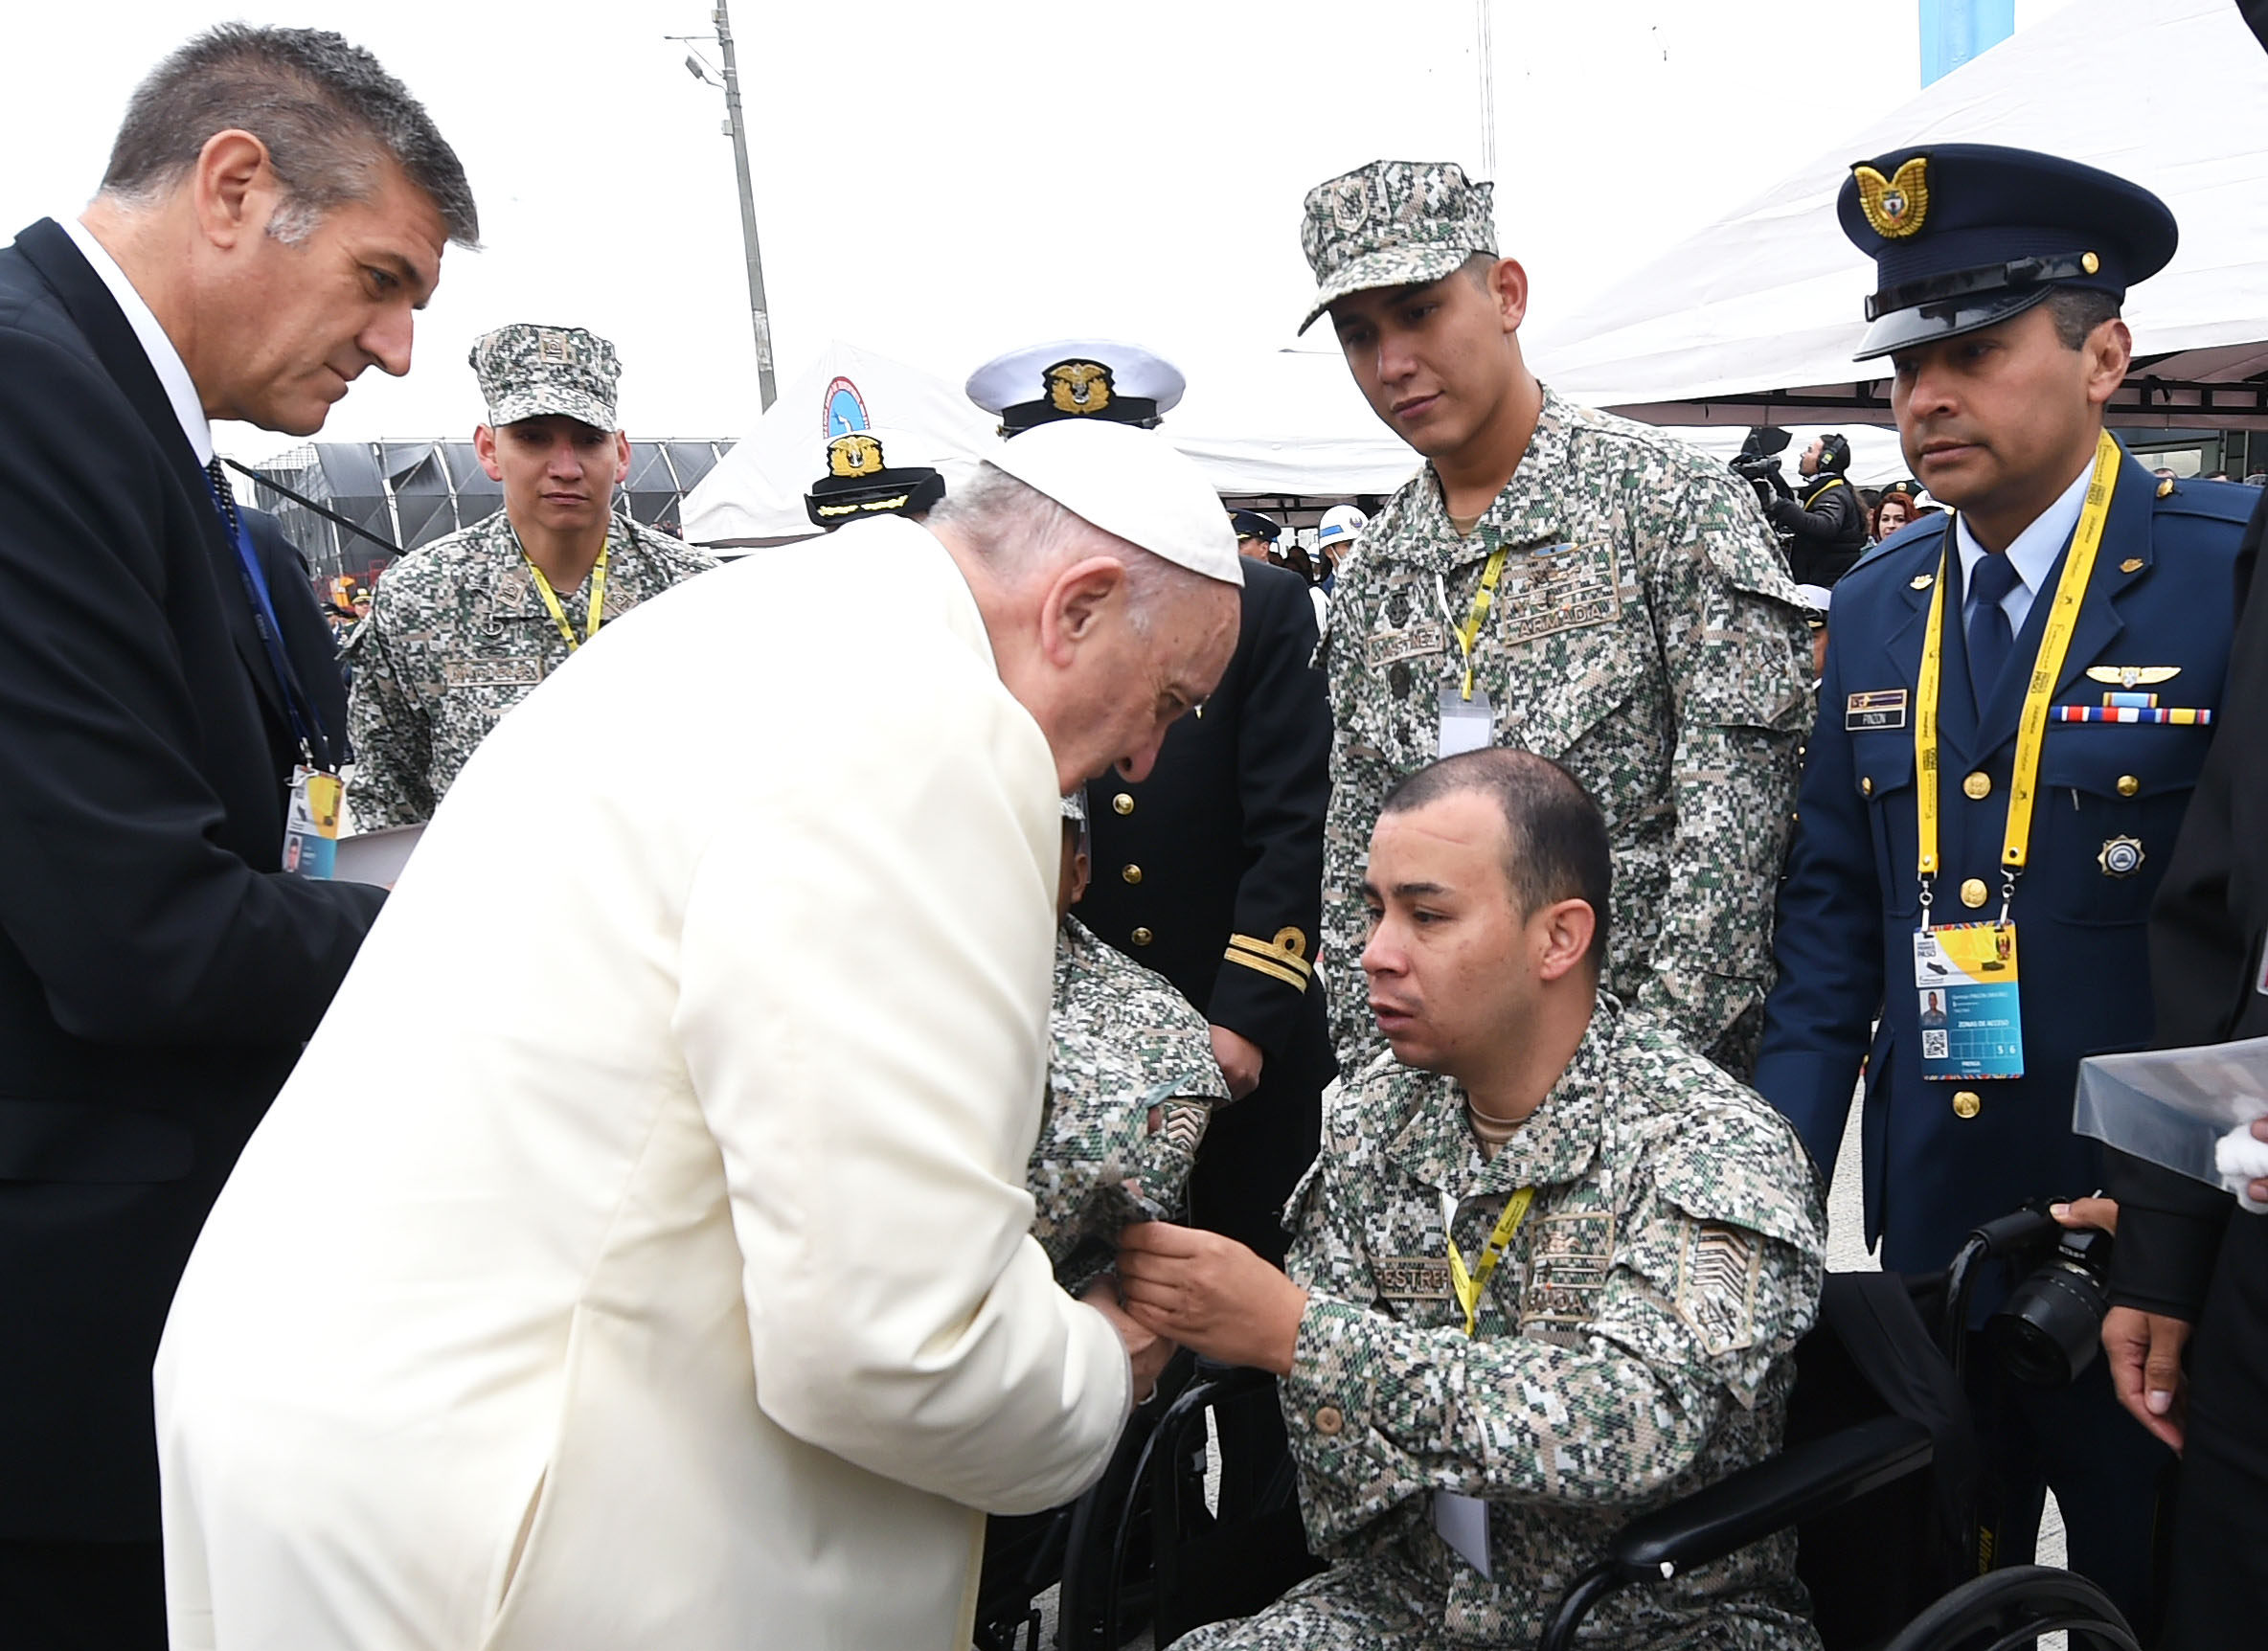 El Papa Francisco Envía Carta A Miembro De La Fuerza Pública